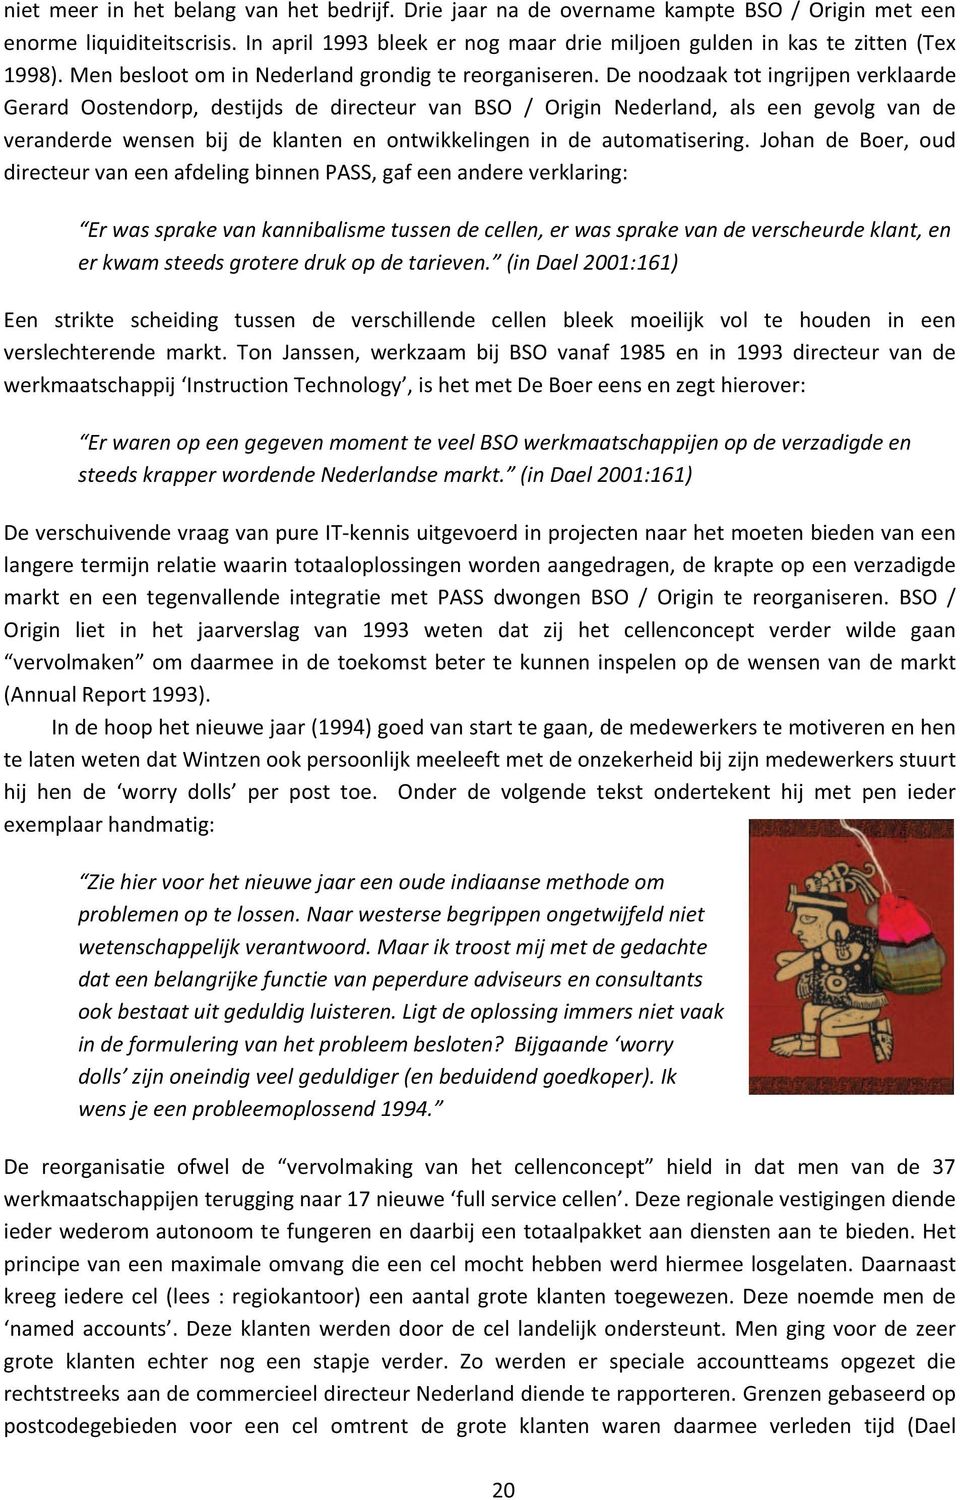 Denoodzaaktotingrijpenverklaarde Gerard Oostendorp, destijds de directeur van BSO / Origin Nederland, als een gevolg van de veranderdewensenbijdeklantenenontwikkelingenindeautomatisering.